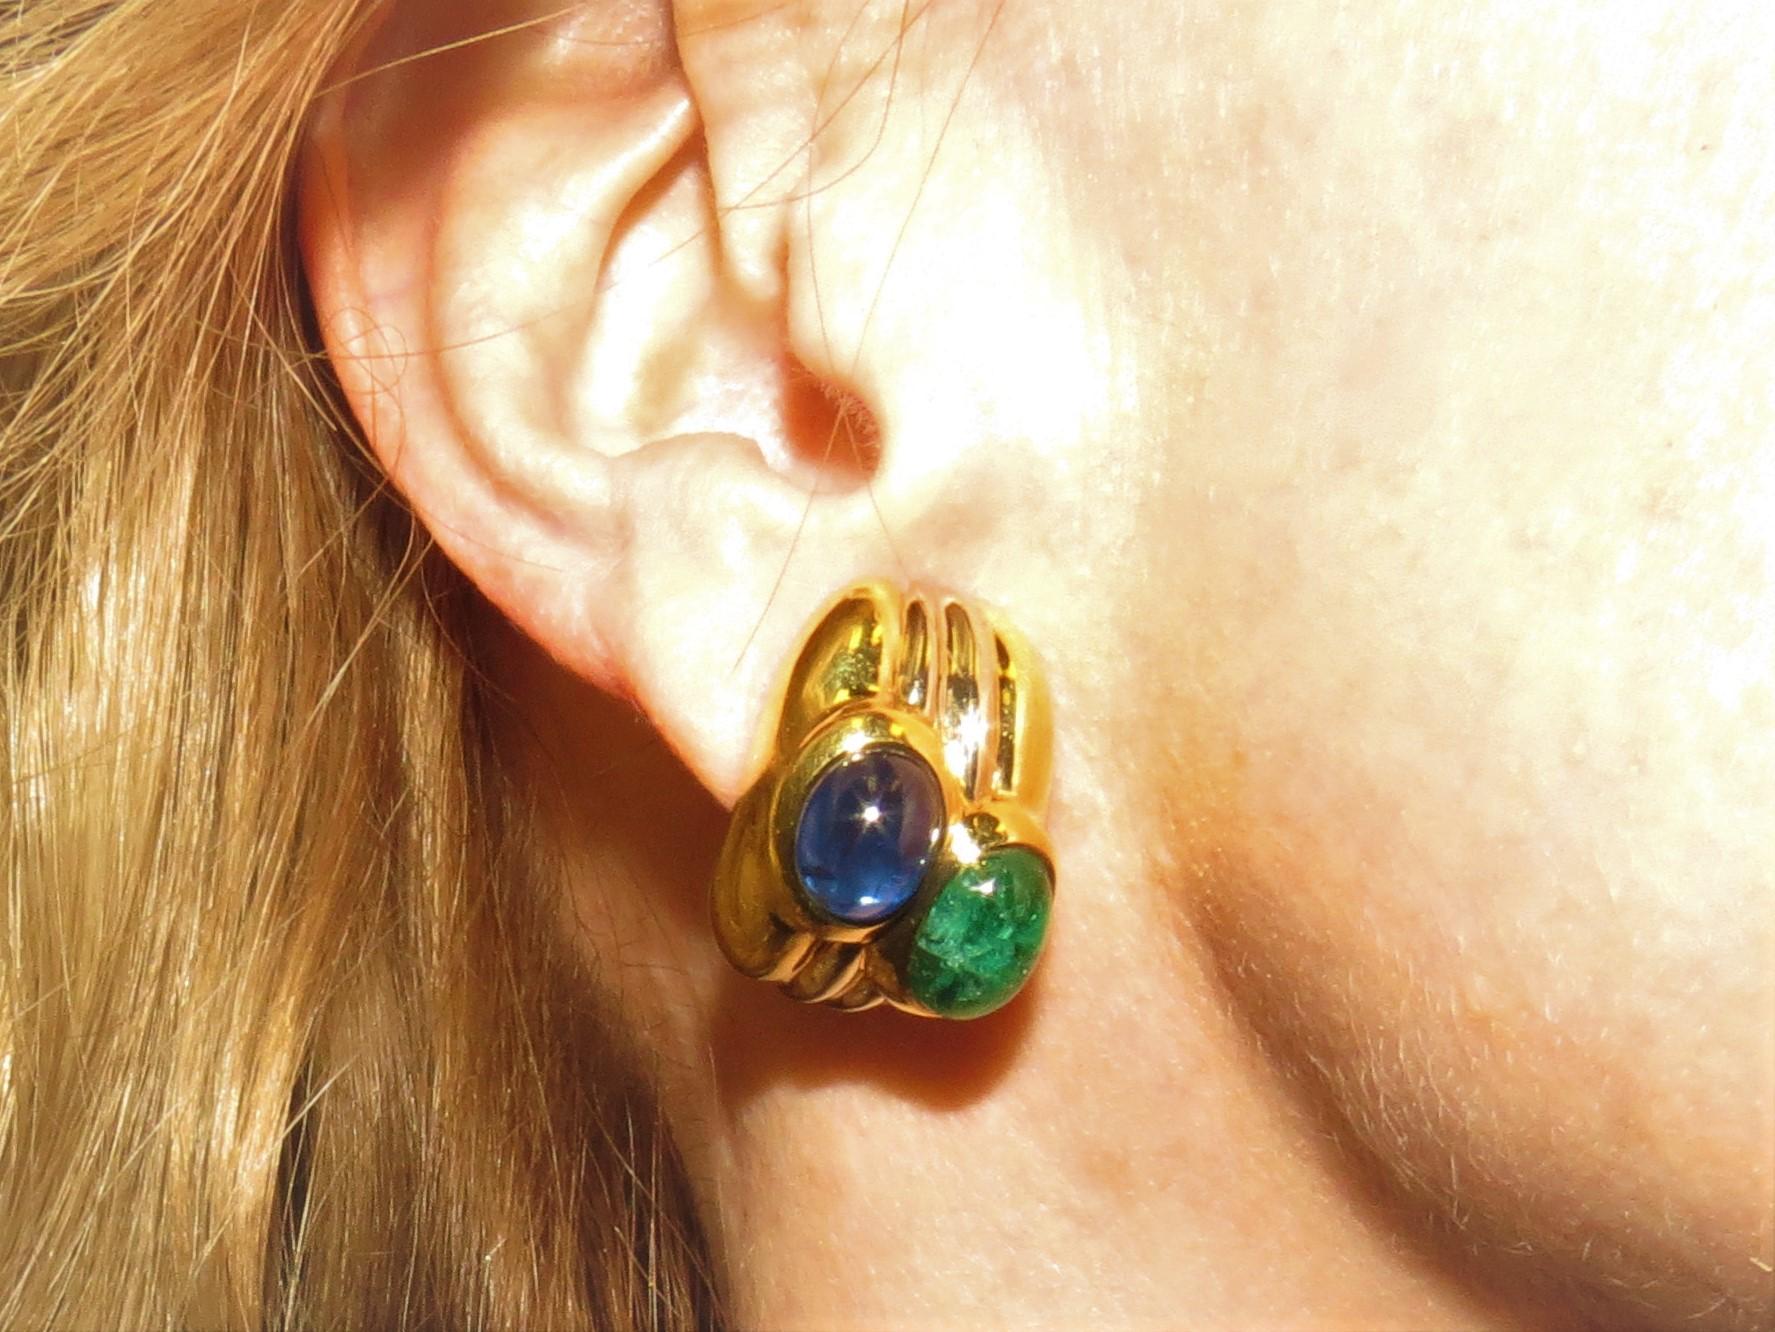 boucles d'oreilles en or jaune 18K, par Giovanne, serties de 2 saphirs bleus cabochons ovales et de 2 émeraudes ovales pesant 14.89cts au total.
Vente au détail 11 500